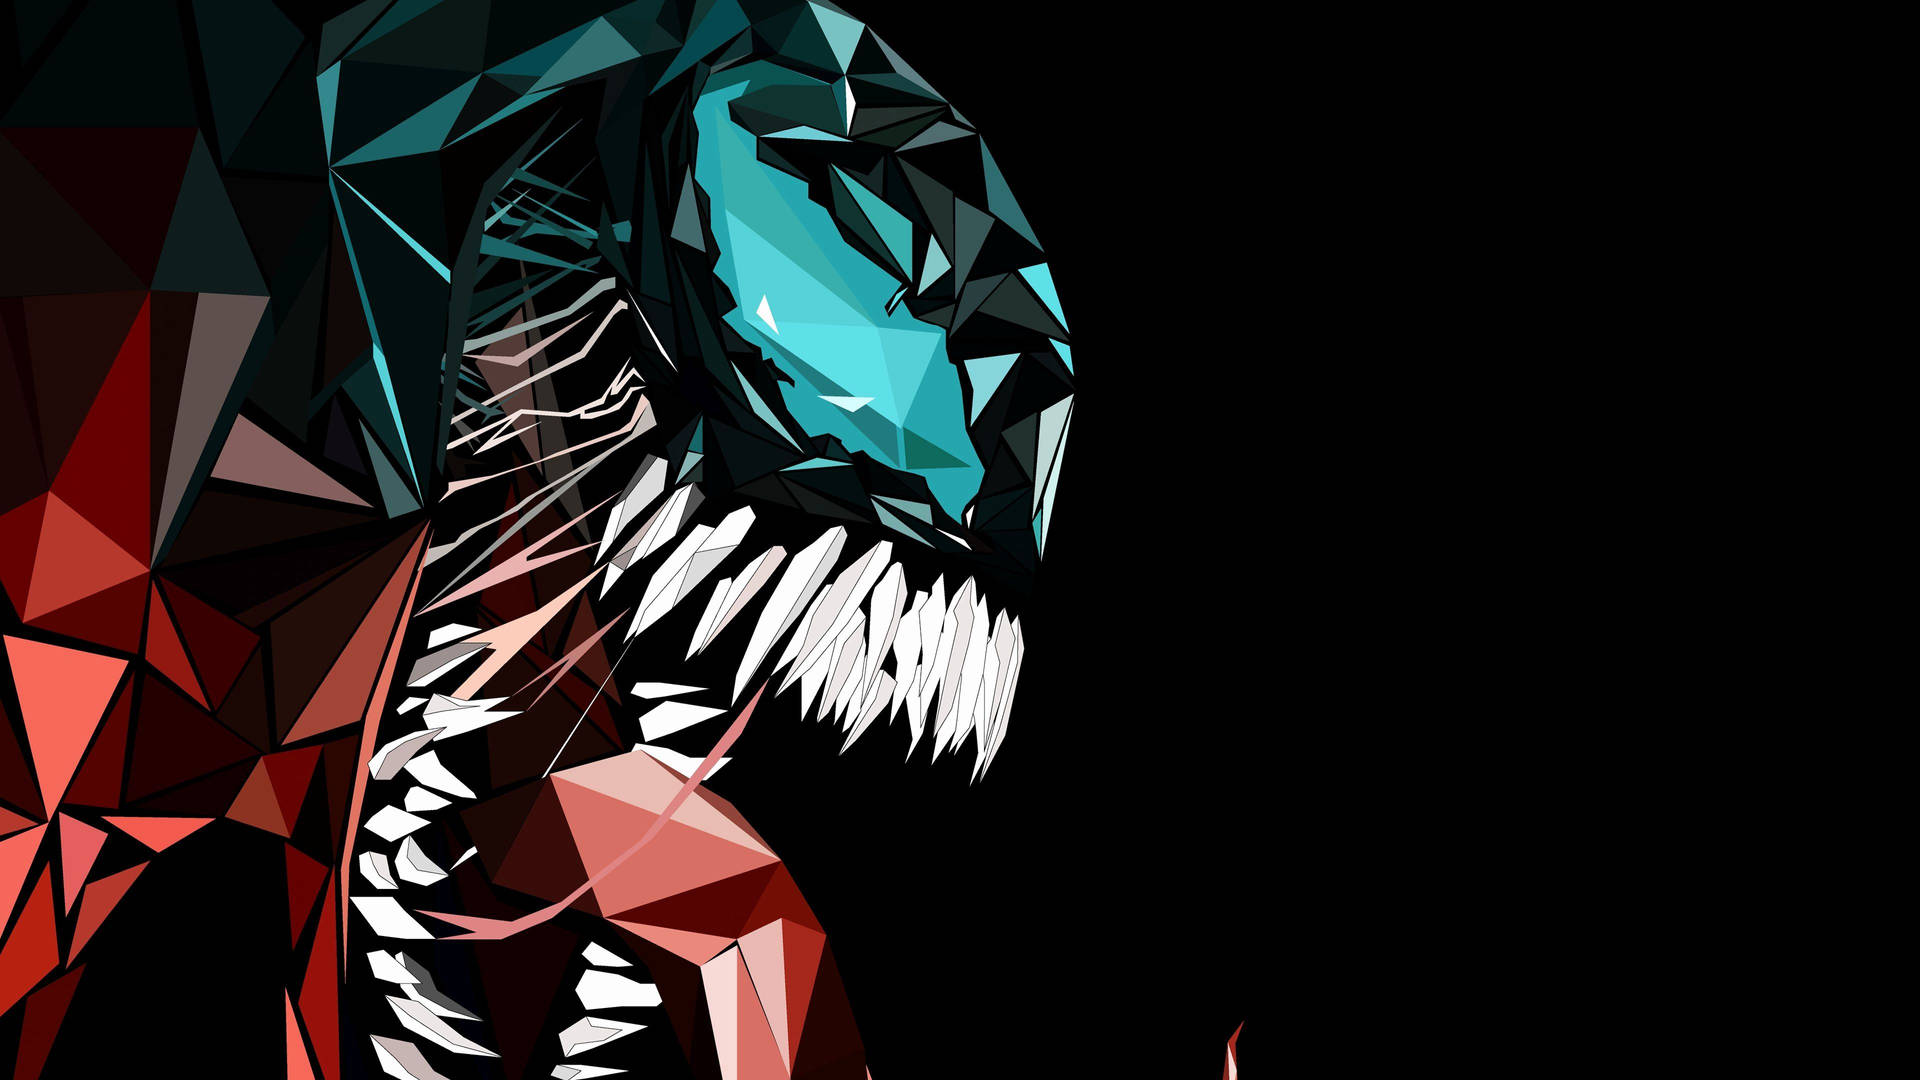 Stunning Art of Venom in Action Wallpaper